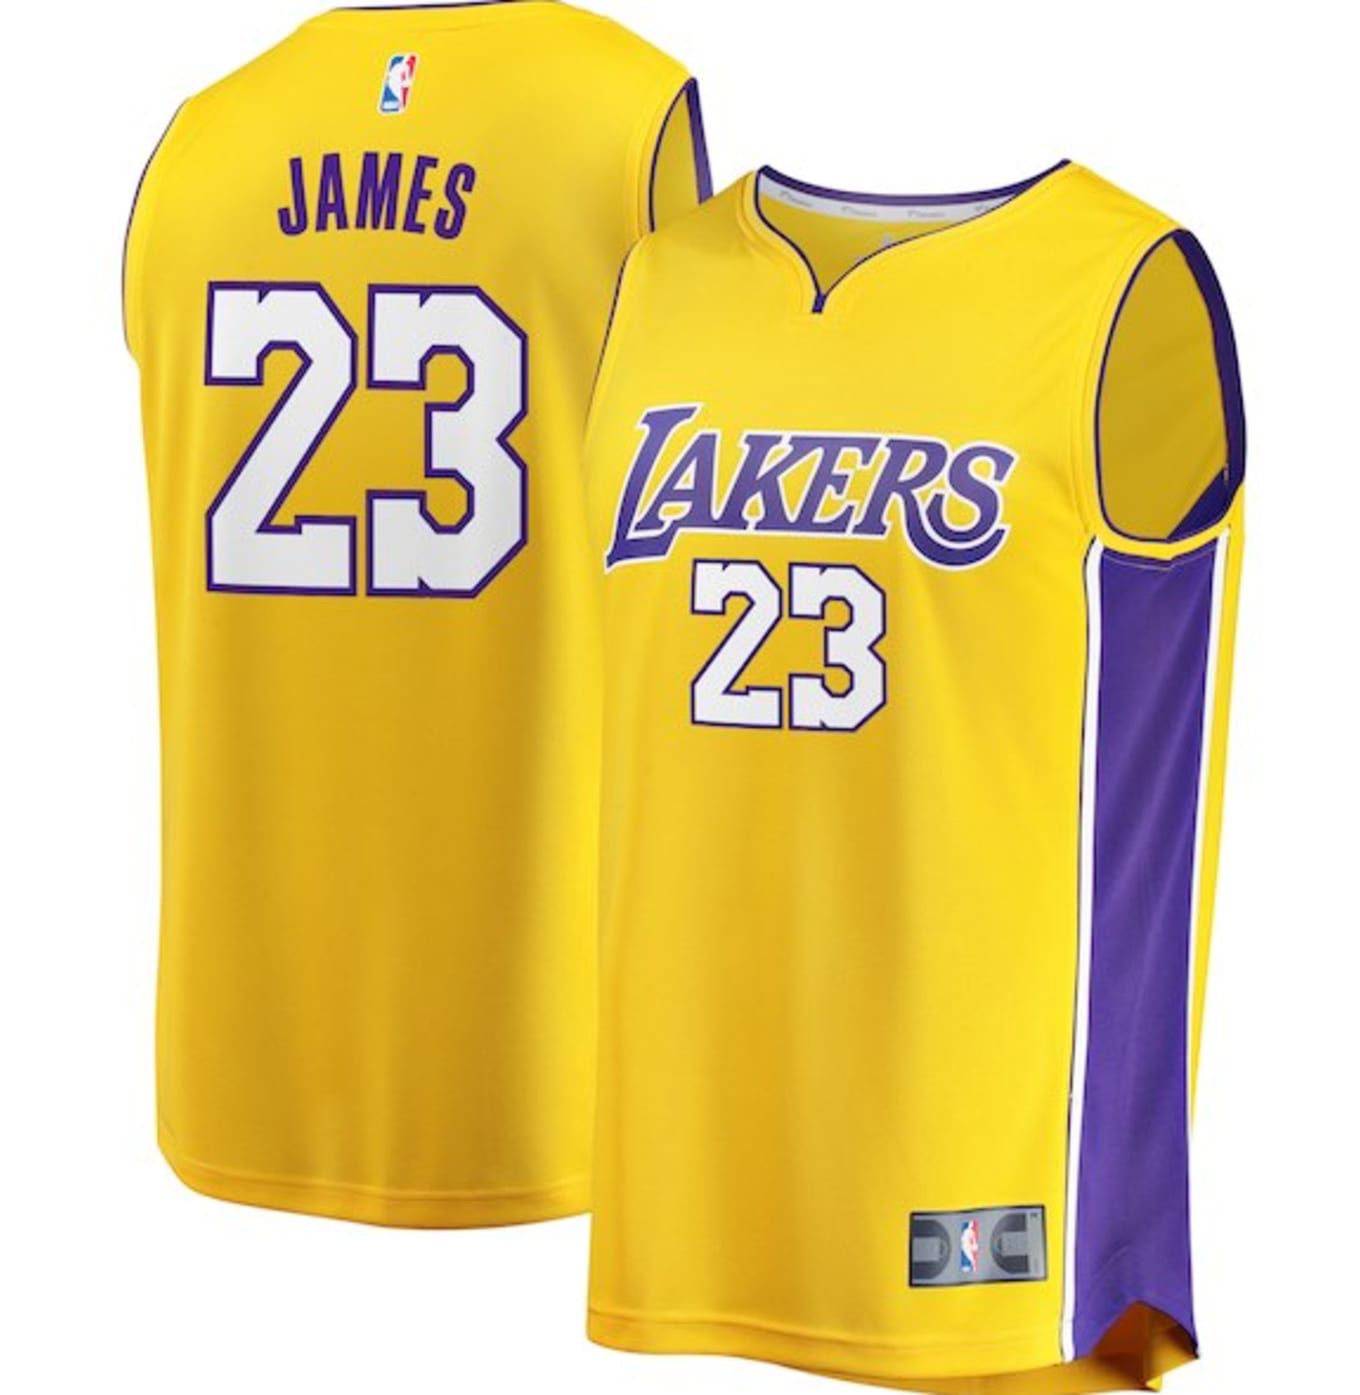 NBA champions Lakers Jersey 23